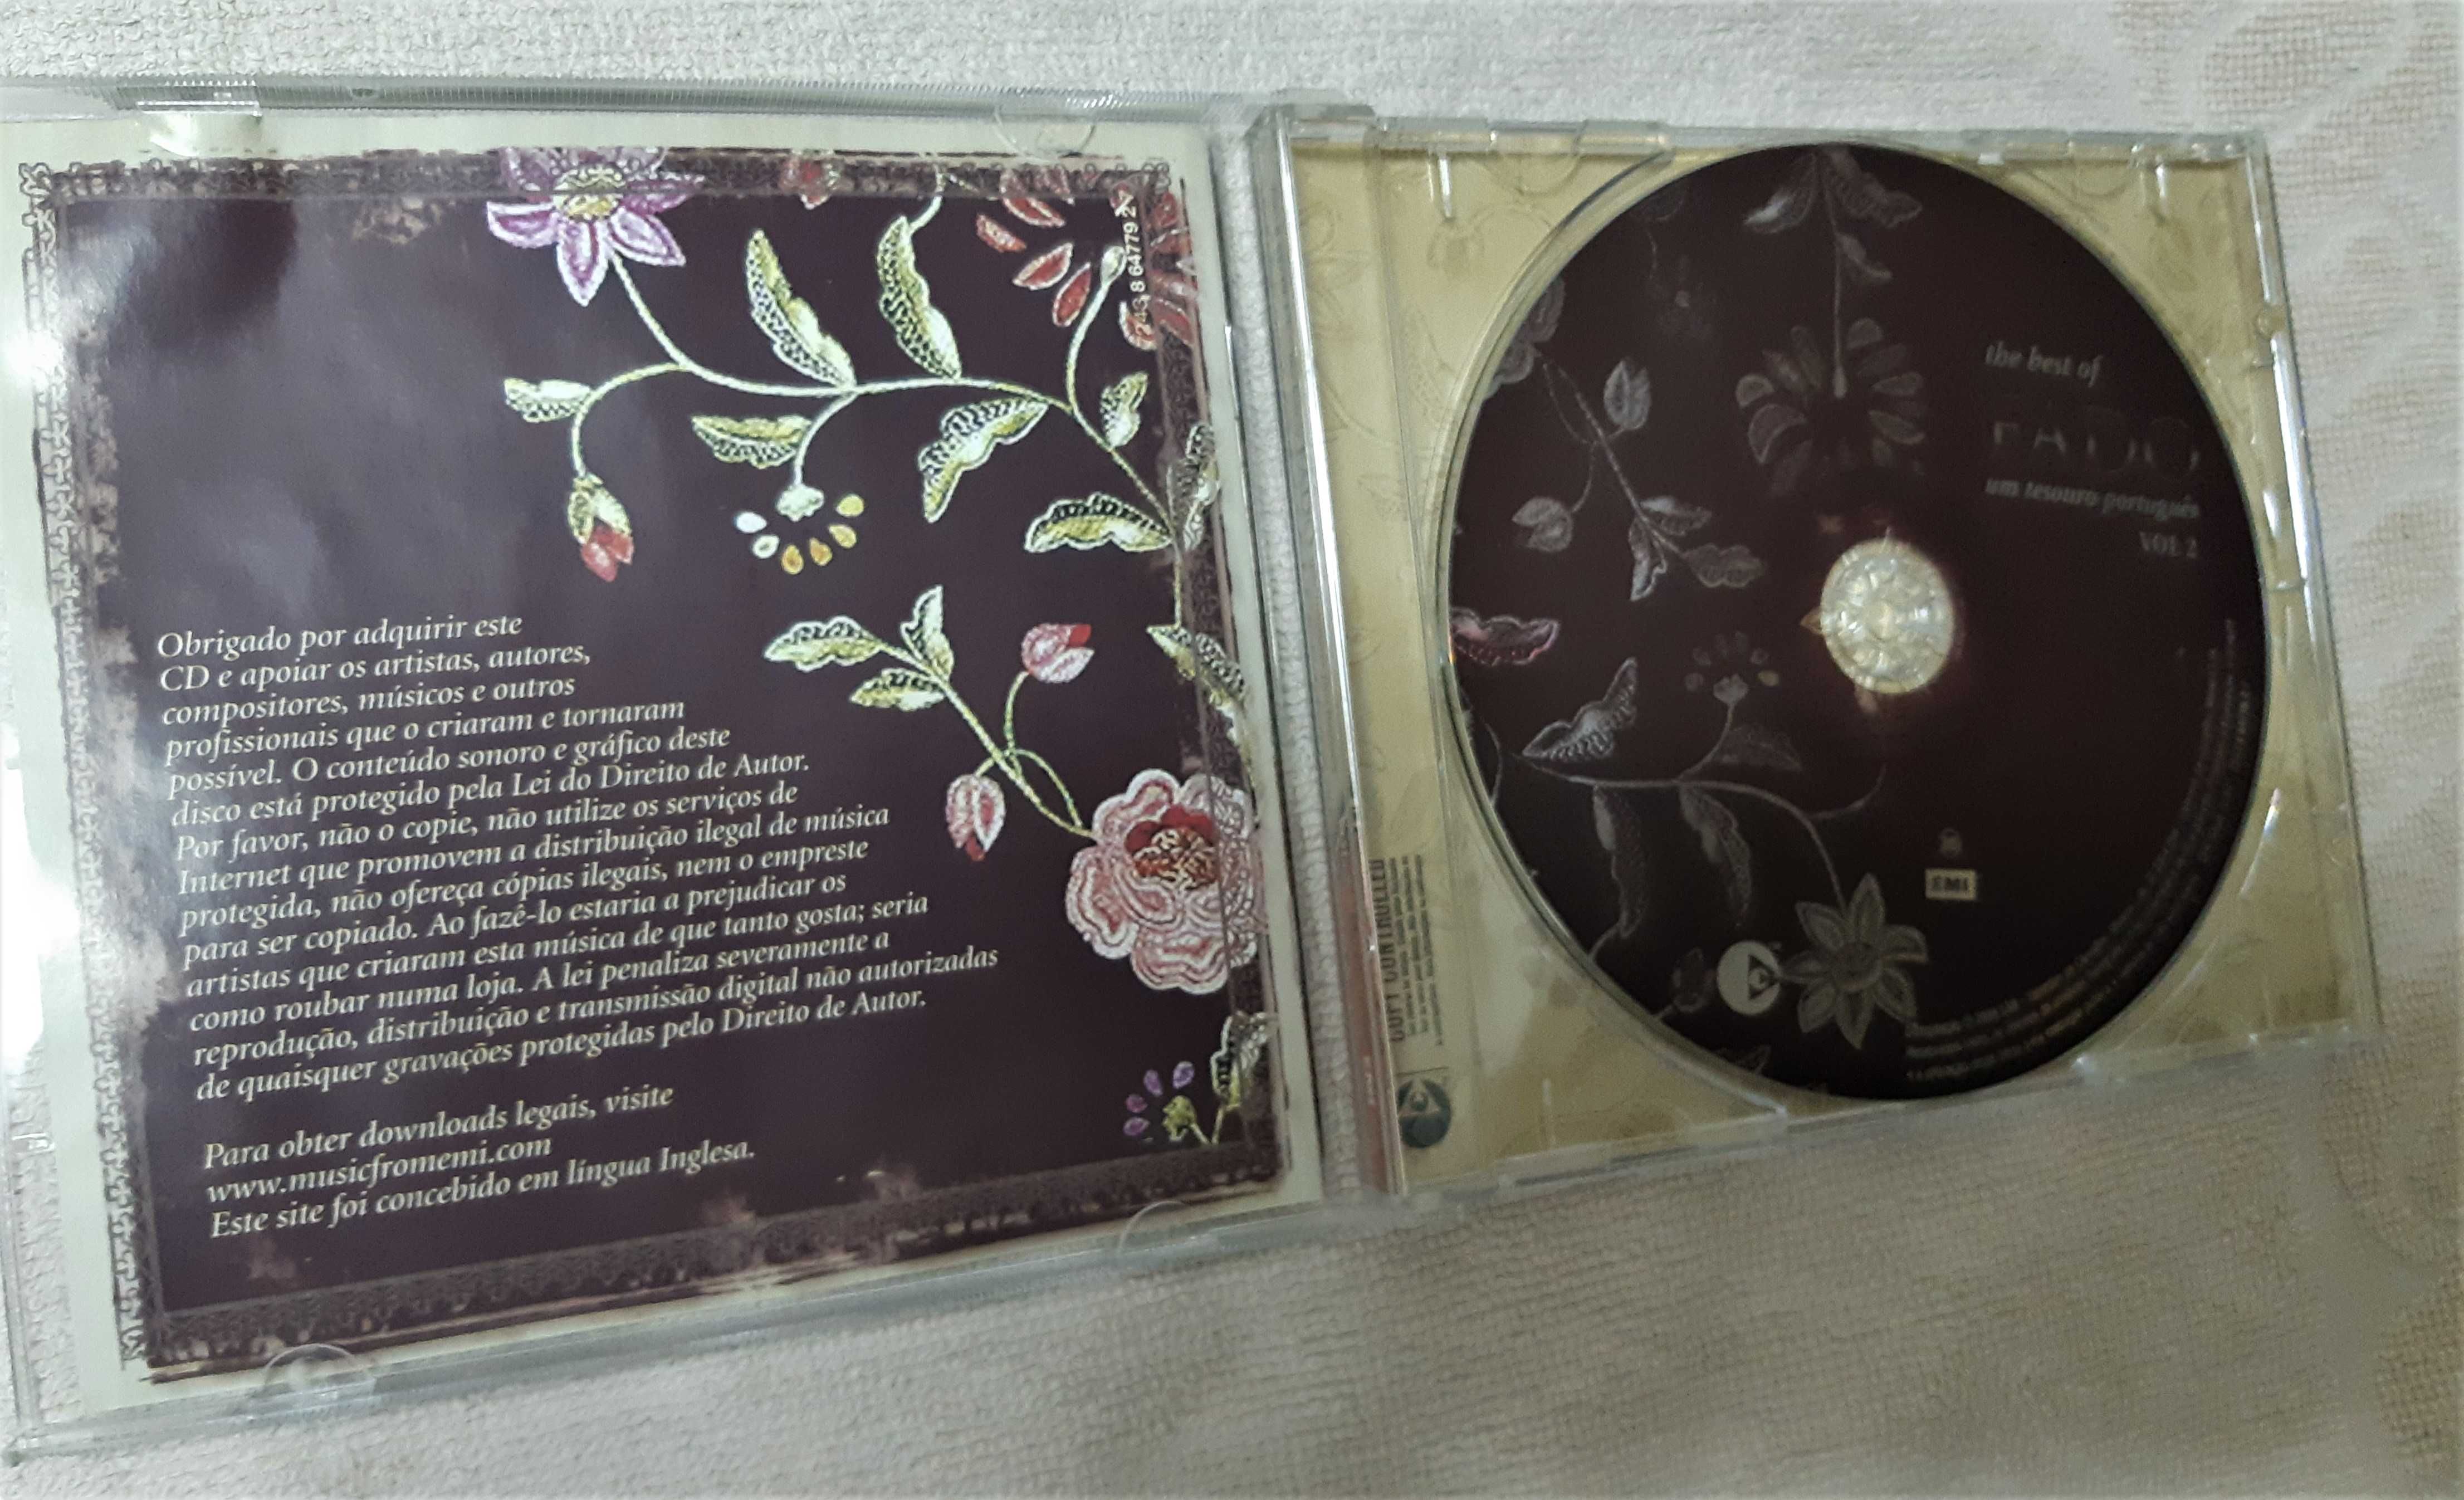 CD Coletânea "The best of Fado - Um tesouro português - Volume 2"